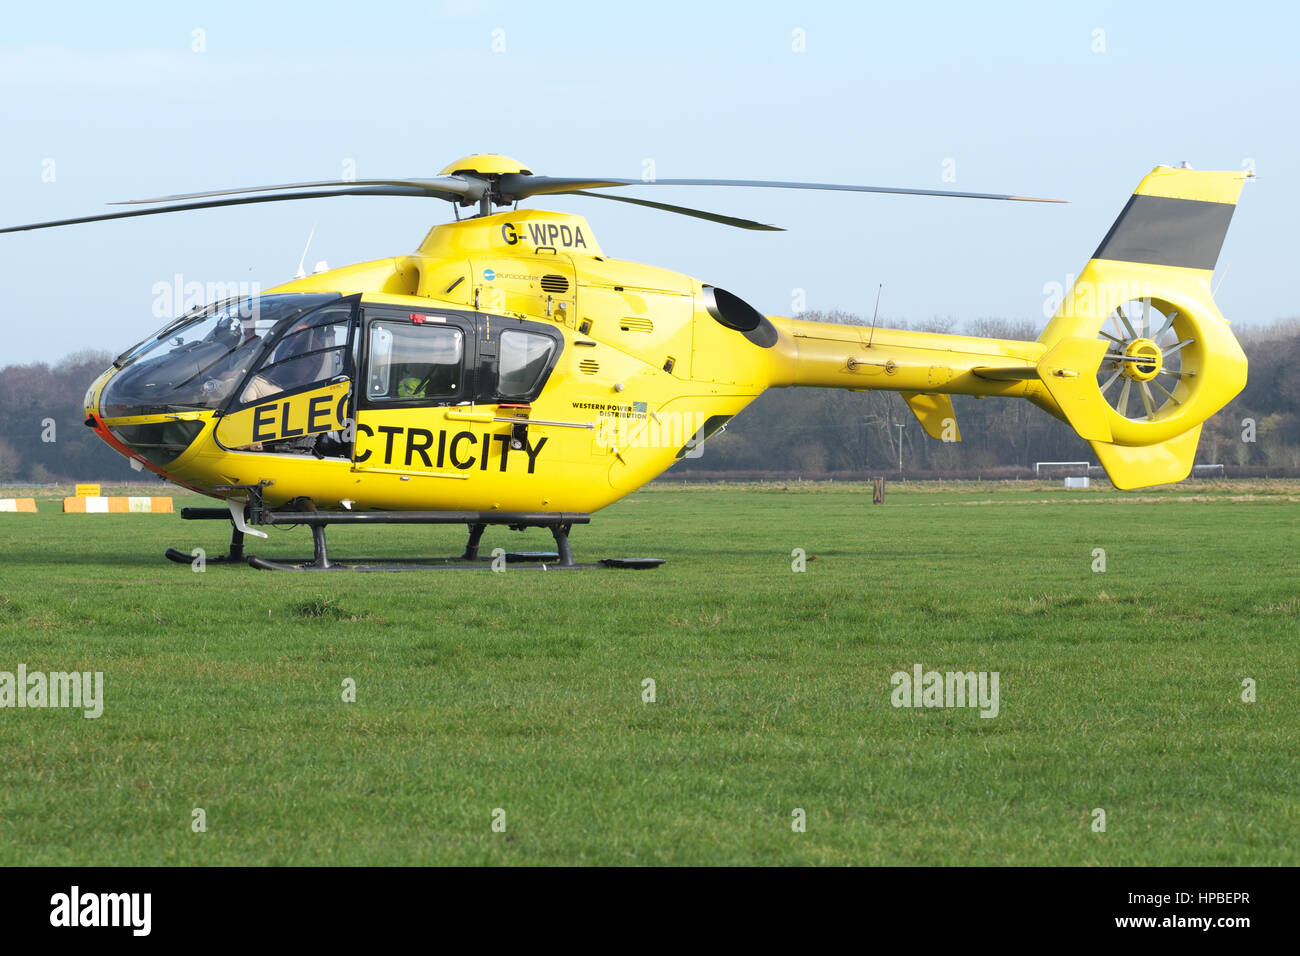 Hélicoptère Eurocopter EC 135 utilisé pour contrôler l'alimentation de l'électricité par Western Power Distribution WPD en UK Banque D'Images